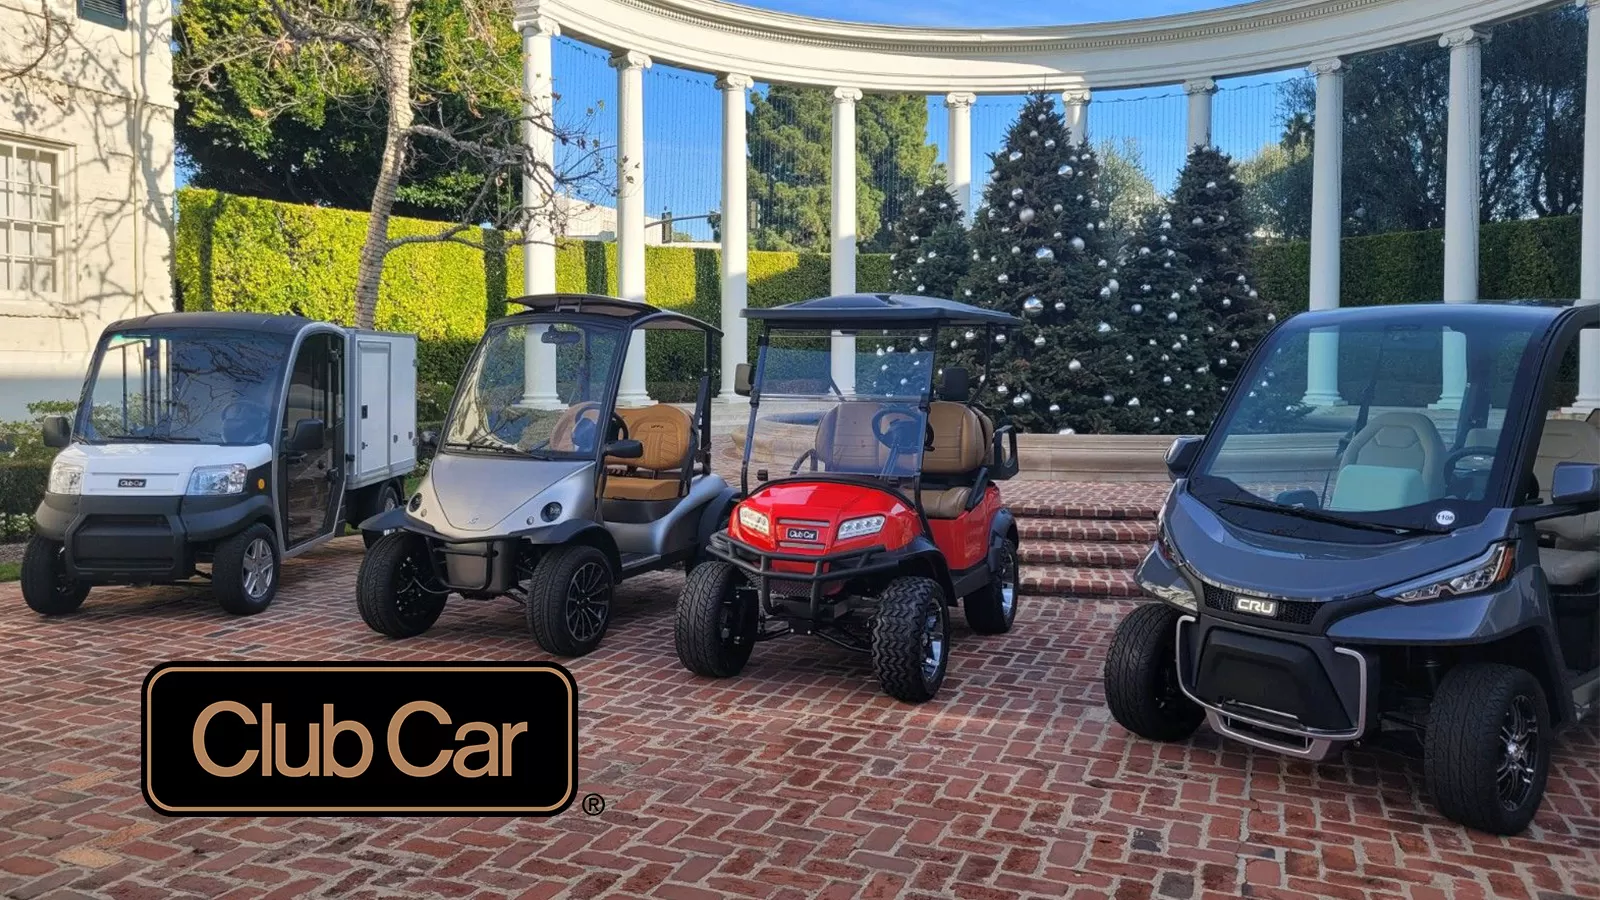 Club Car Golf Carts